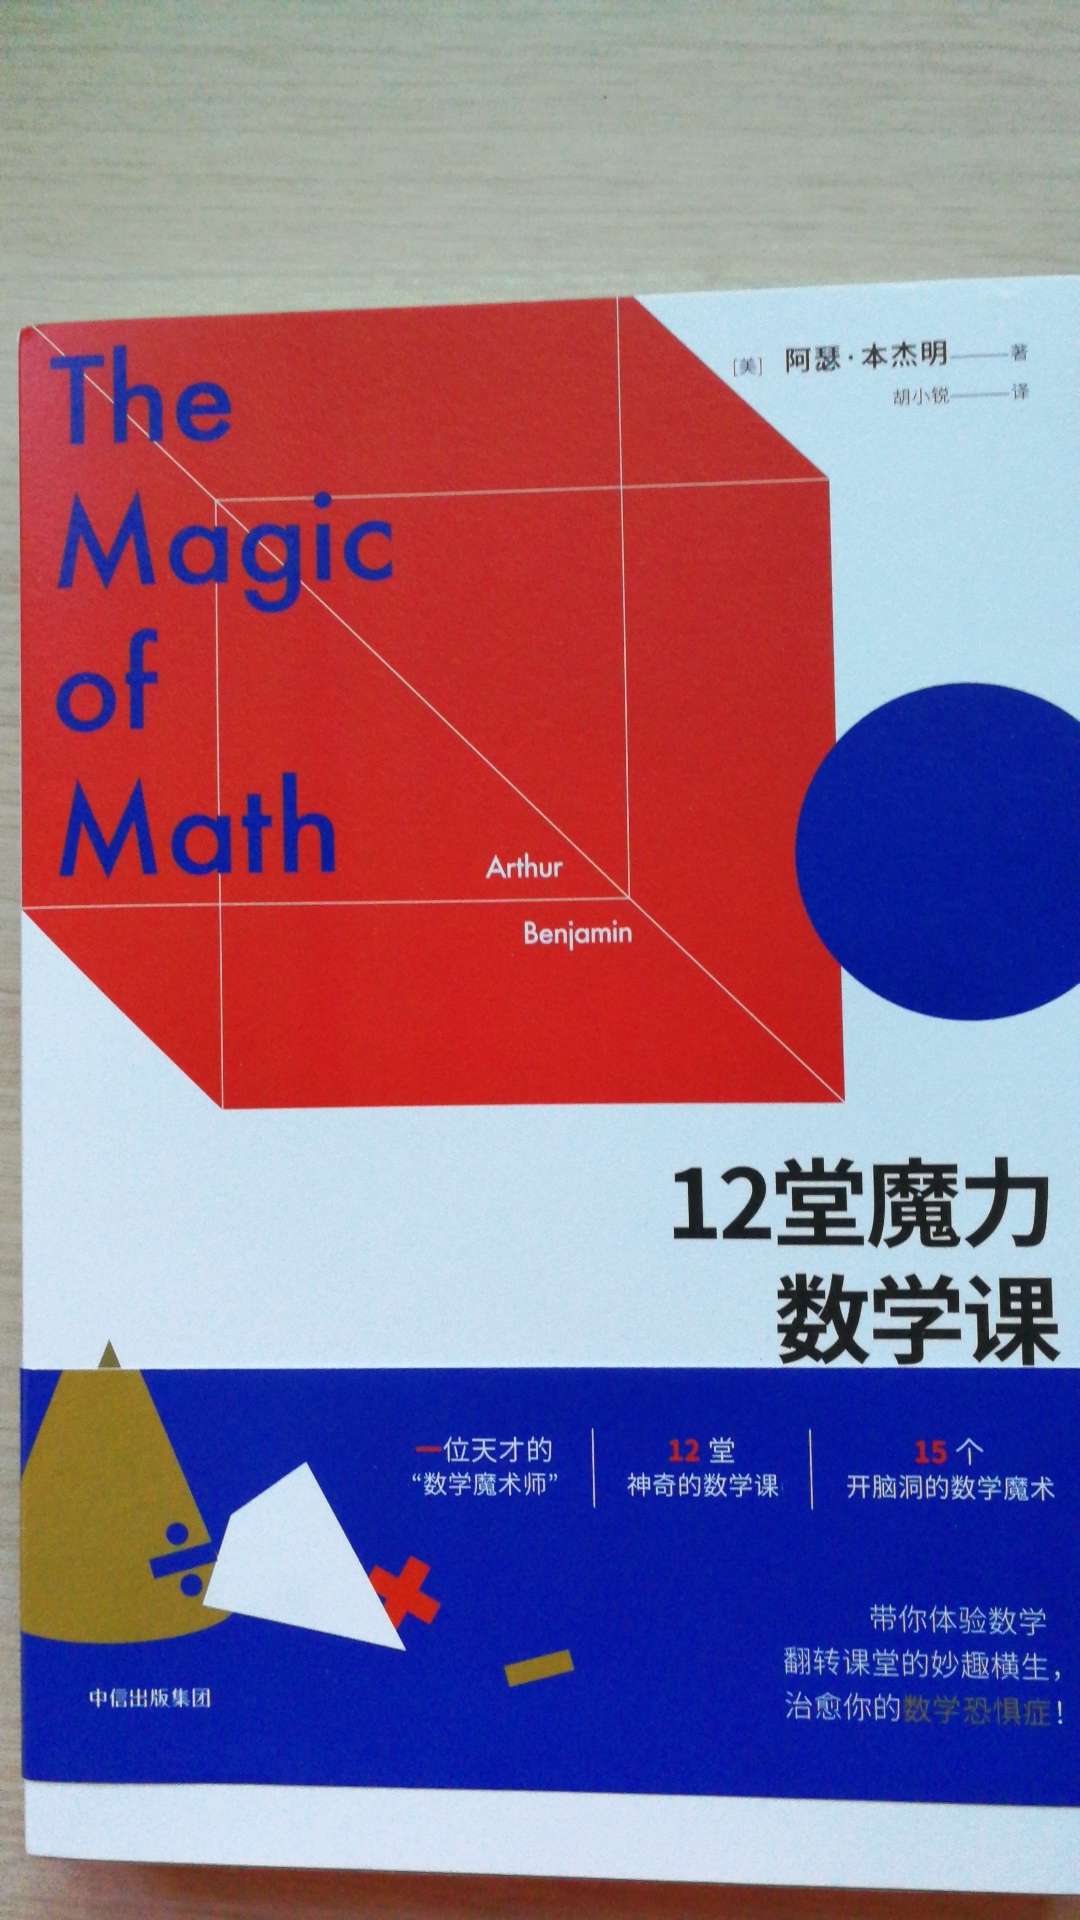 一本提升数学素养的好书，涉及了小学，中学，大学的一些基础数学概念，读来颇有收获。